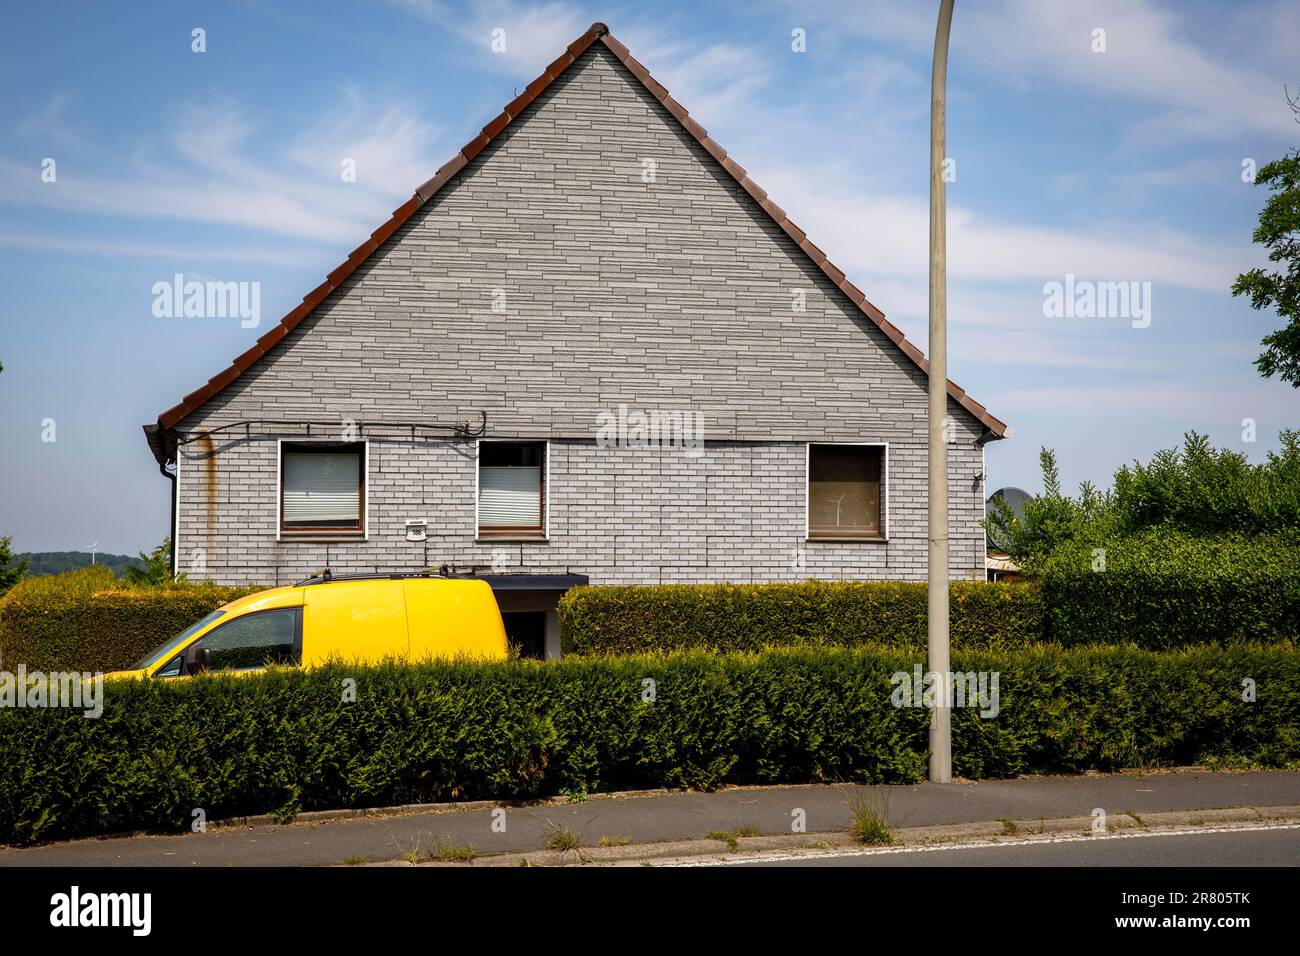 Une voiture jaune se trouve derrière une haie devant une maison en briques grises à Gevelsberg-Silschede, Rhénanie-du-Nord-Westphalie, Allemagne. indication de direction automatique ein gelbes Banque D'Images